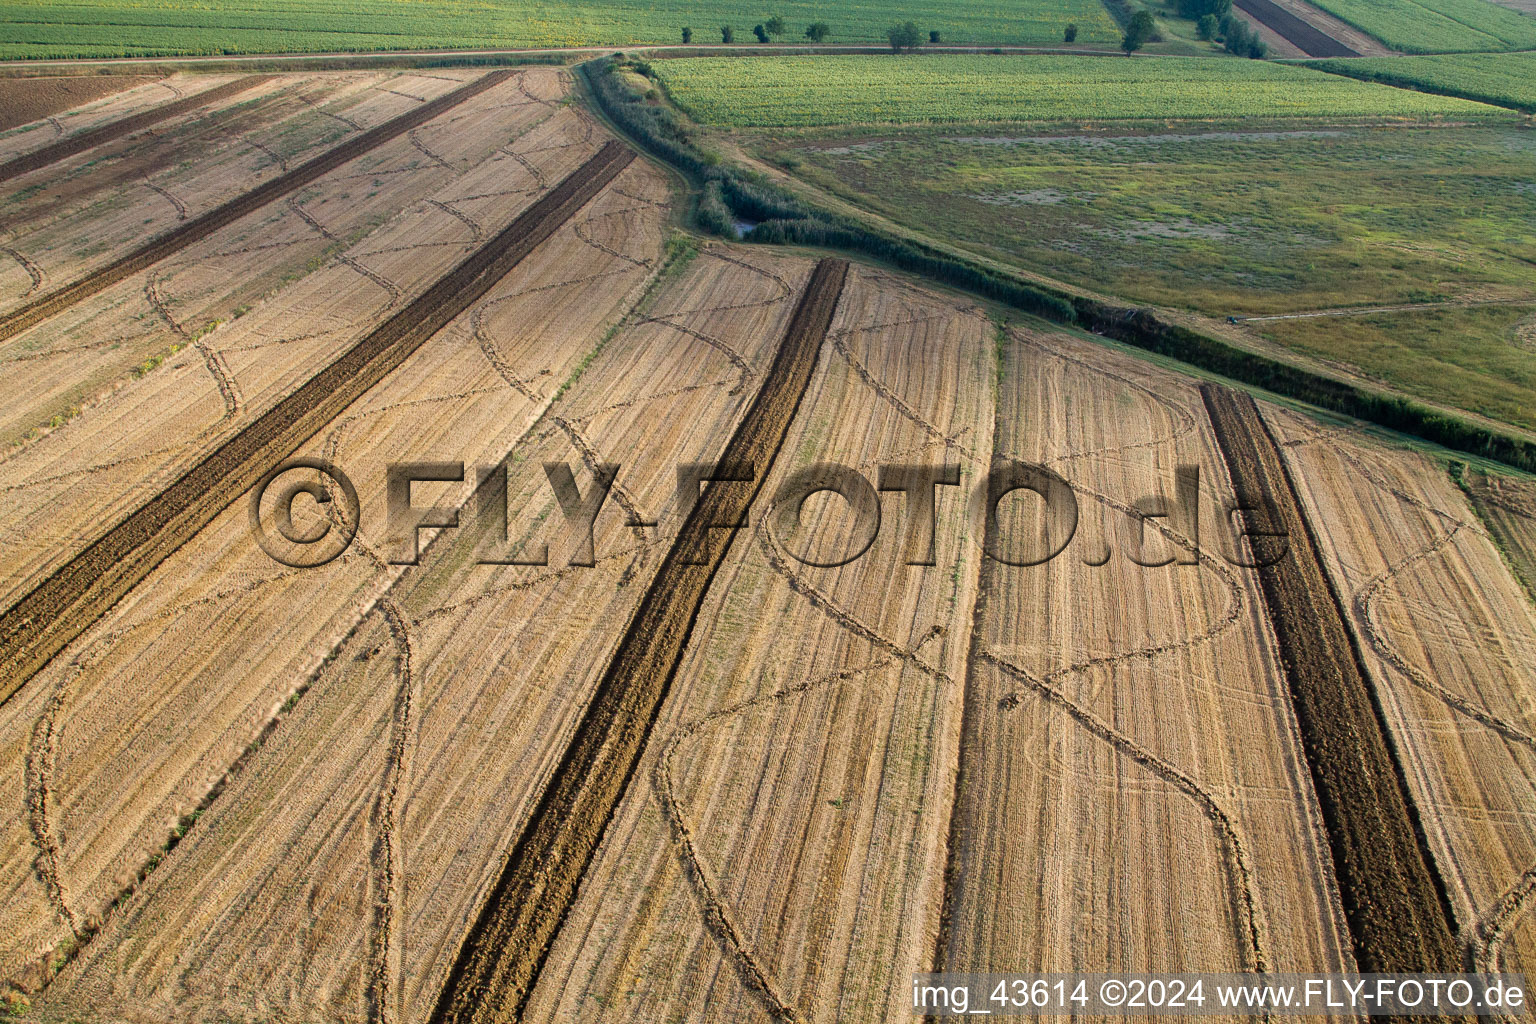 Abgeerntete Kornfeld-Strukturen Landschaft auf einem Getreidefeld in Anatraia in Toscana, Italien